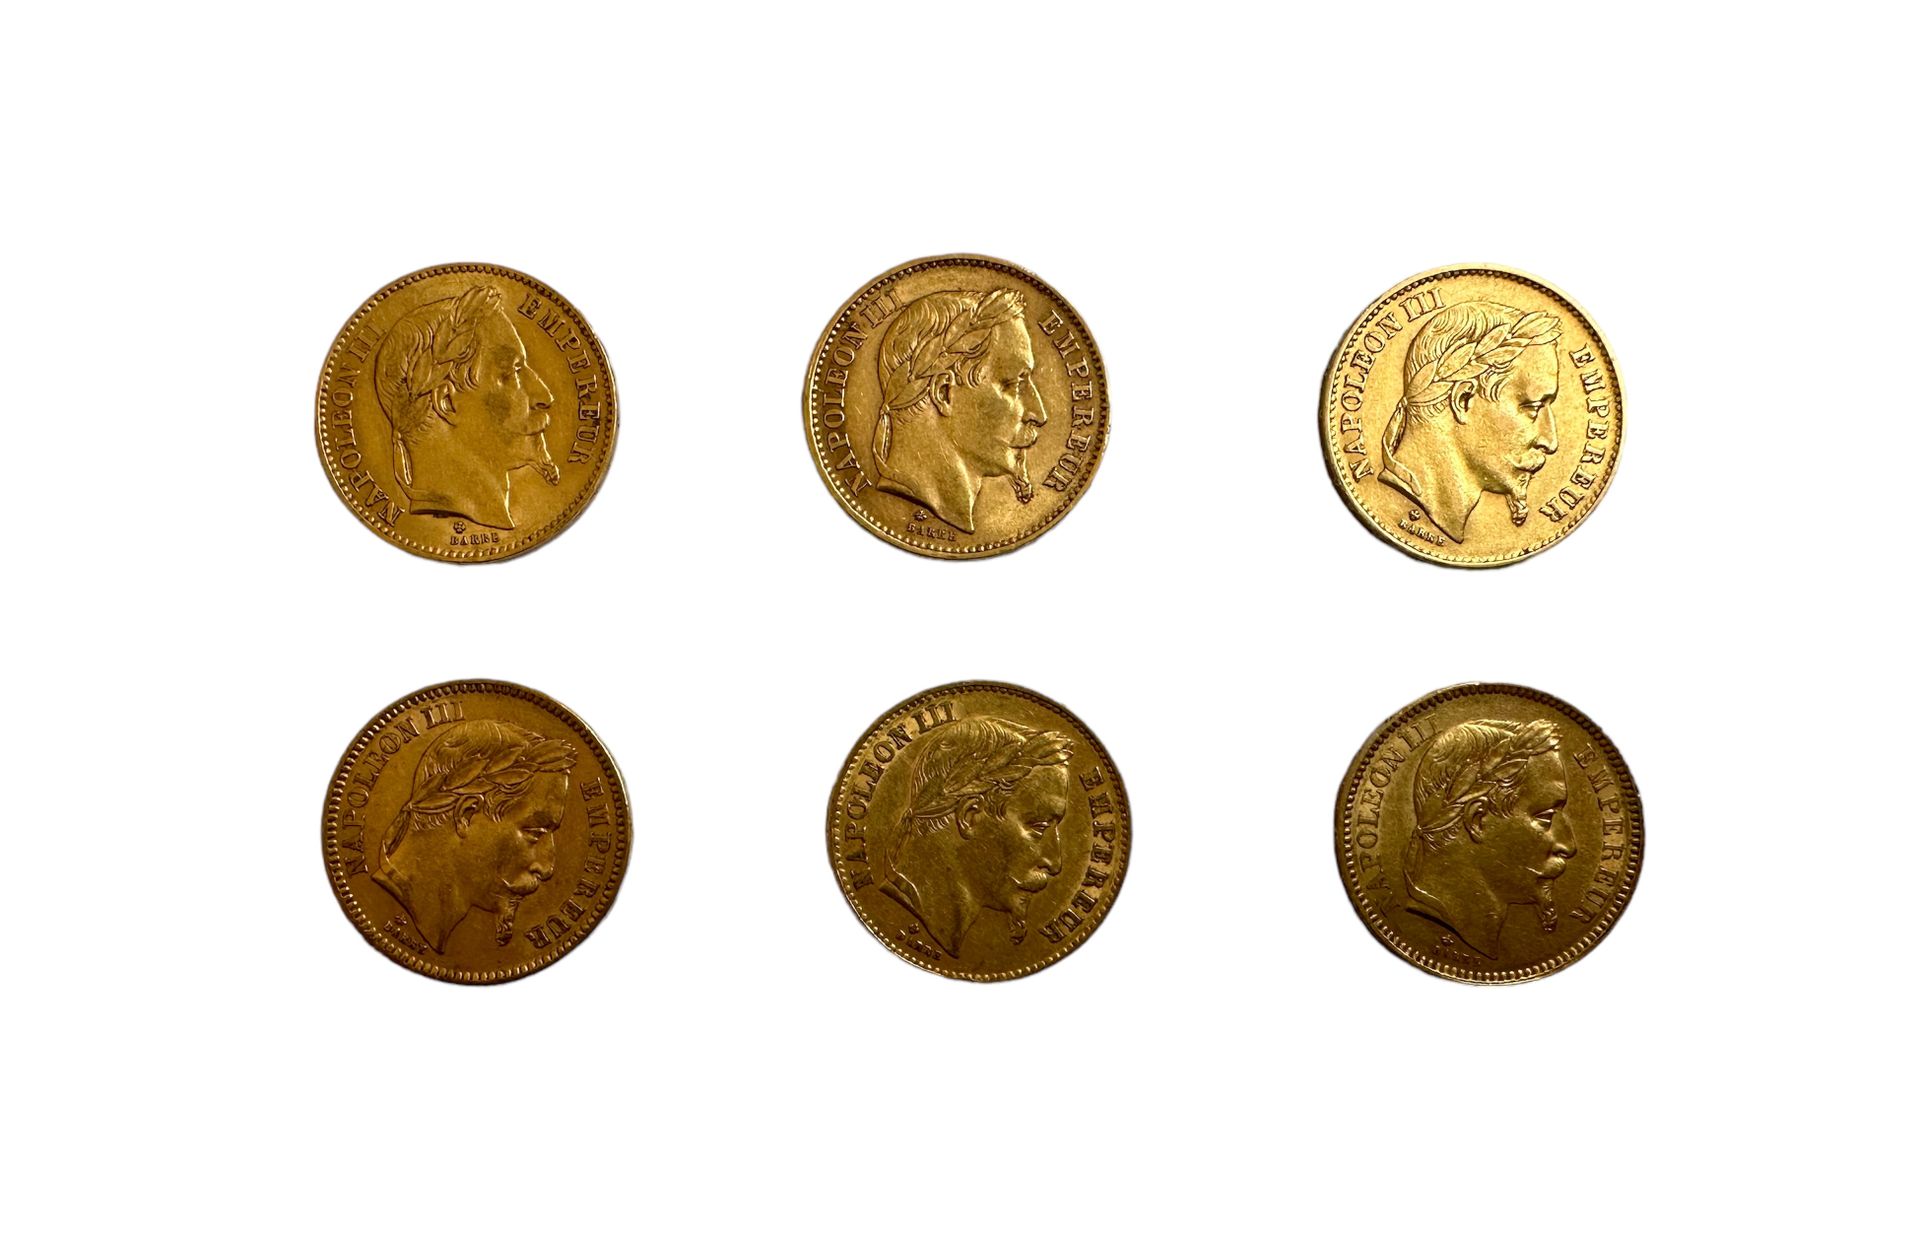 Null FRANCIA
6 monete da 20 franchi d'oro testa di Napoleone III
Peso: 38 g